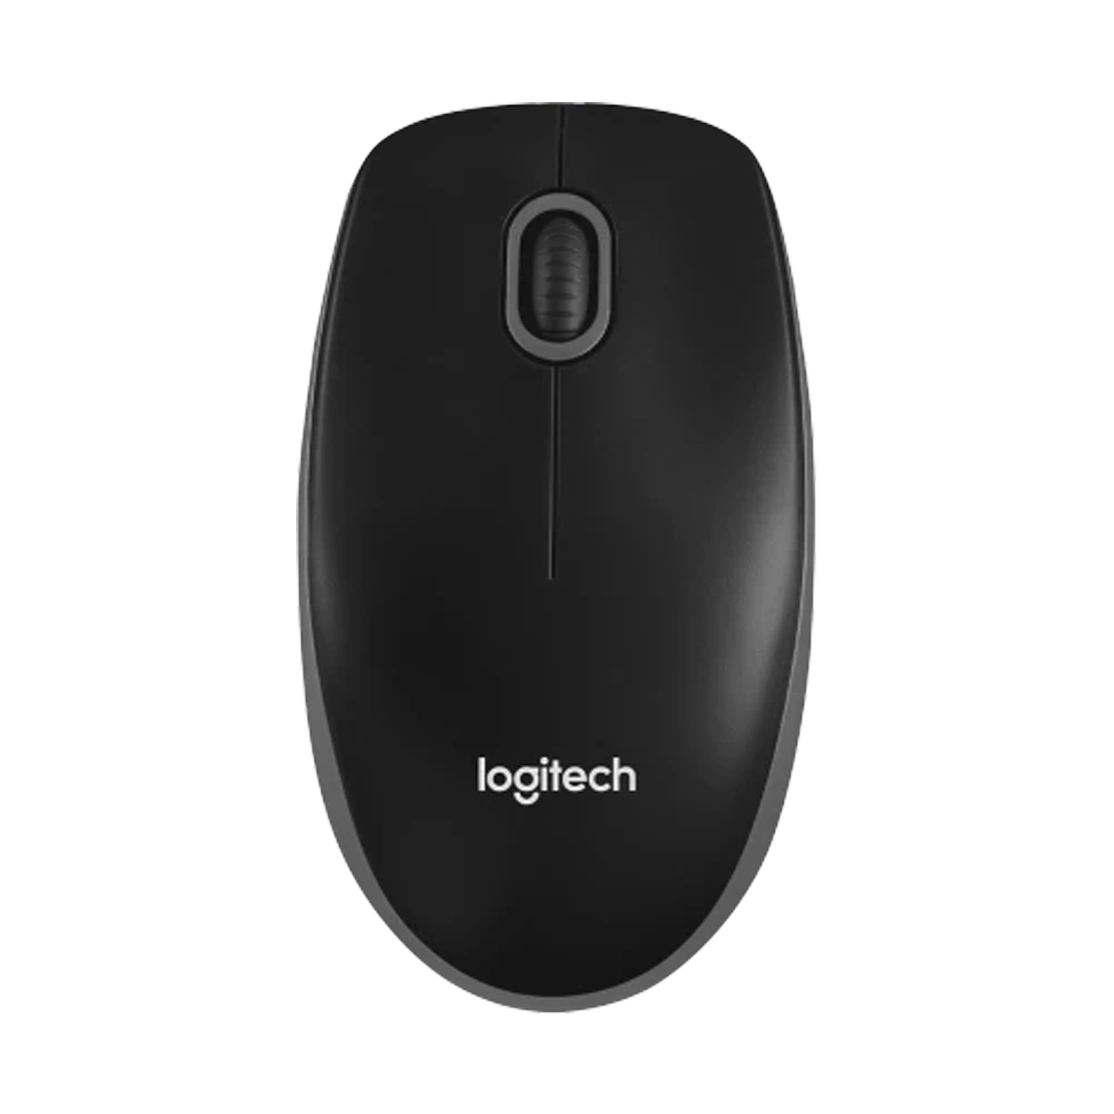 Logitech Optical USB Mouse B100